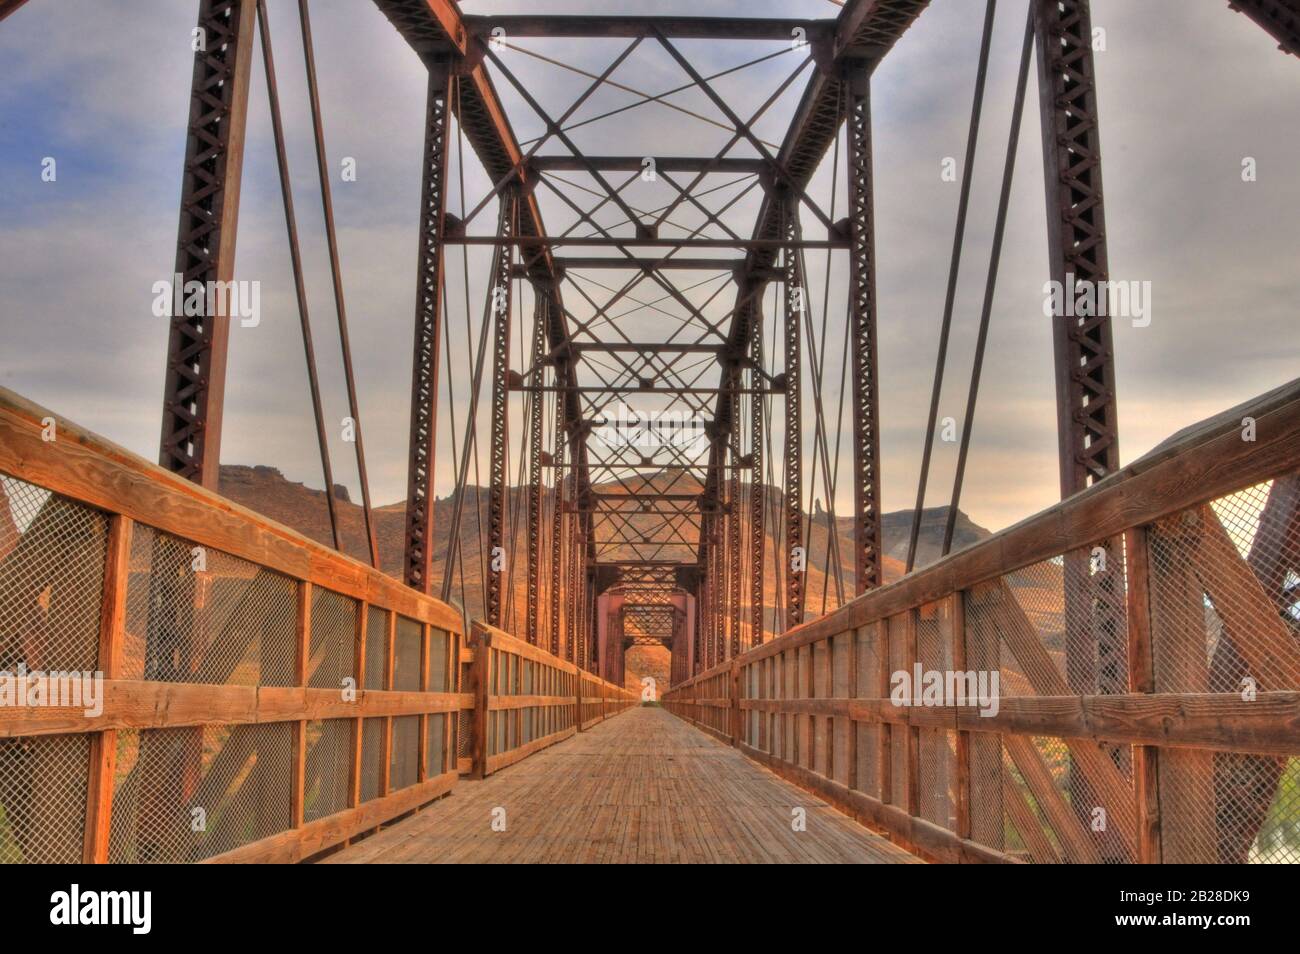 Perspectiva vista de un puente y de su pasarela de madera cubierta con pasamanos vallados de madera bajo las estructuras de soporte de metal en un cálido color óxido Foto de stock